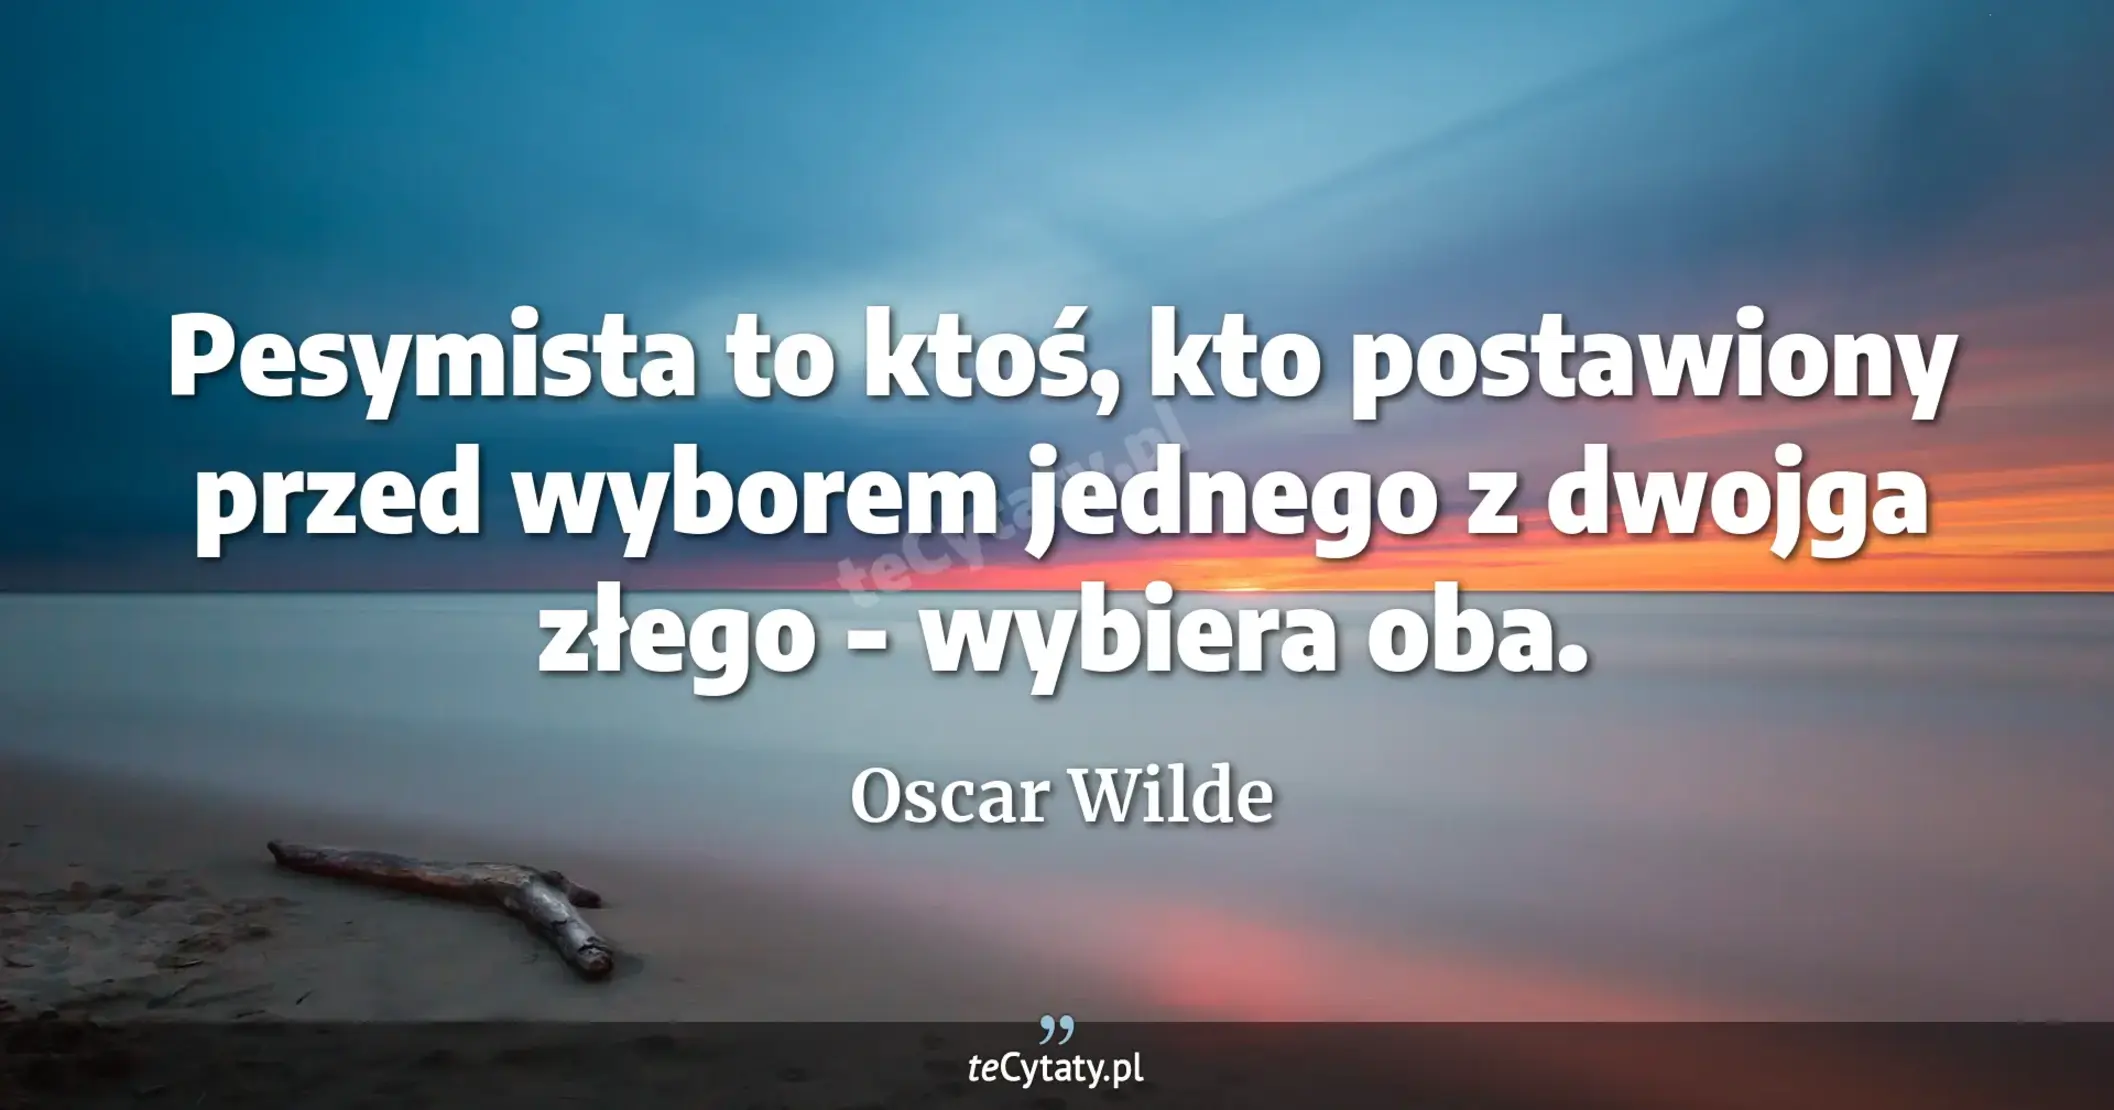 Pesymista to ktoś, kto postawiony przed wyborem jednego z dwojga złego - wybiera oba. - Oscar Wilde